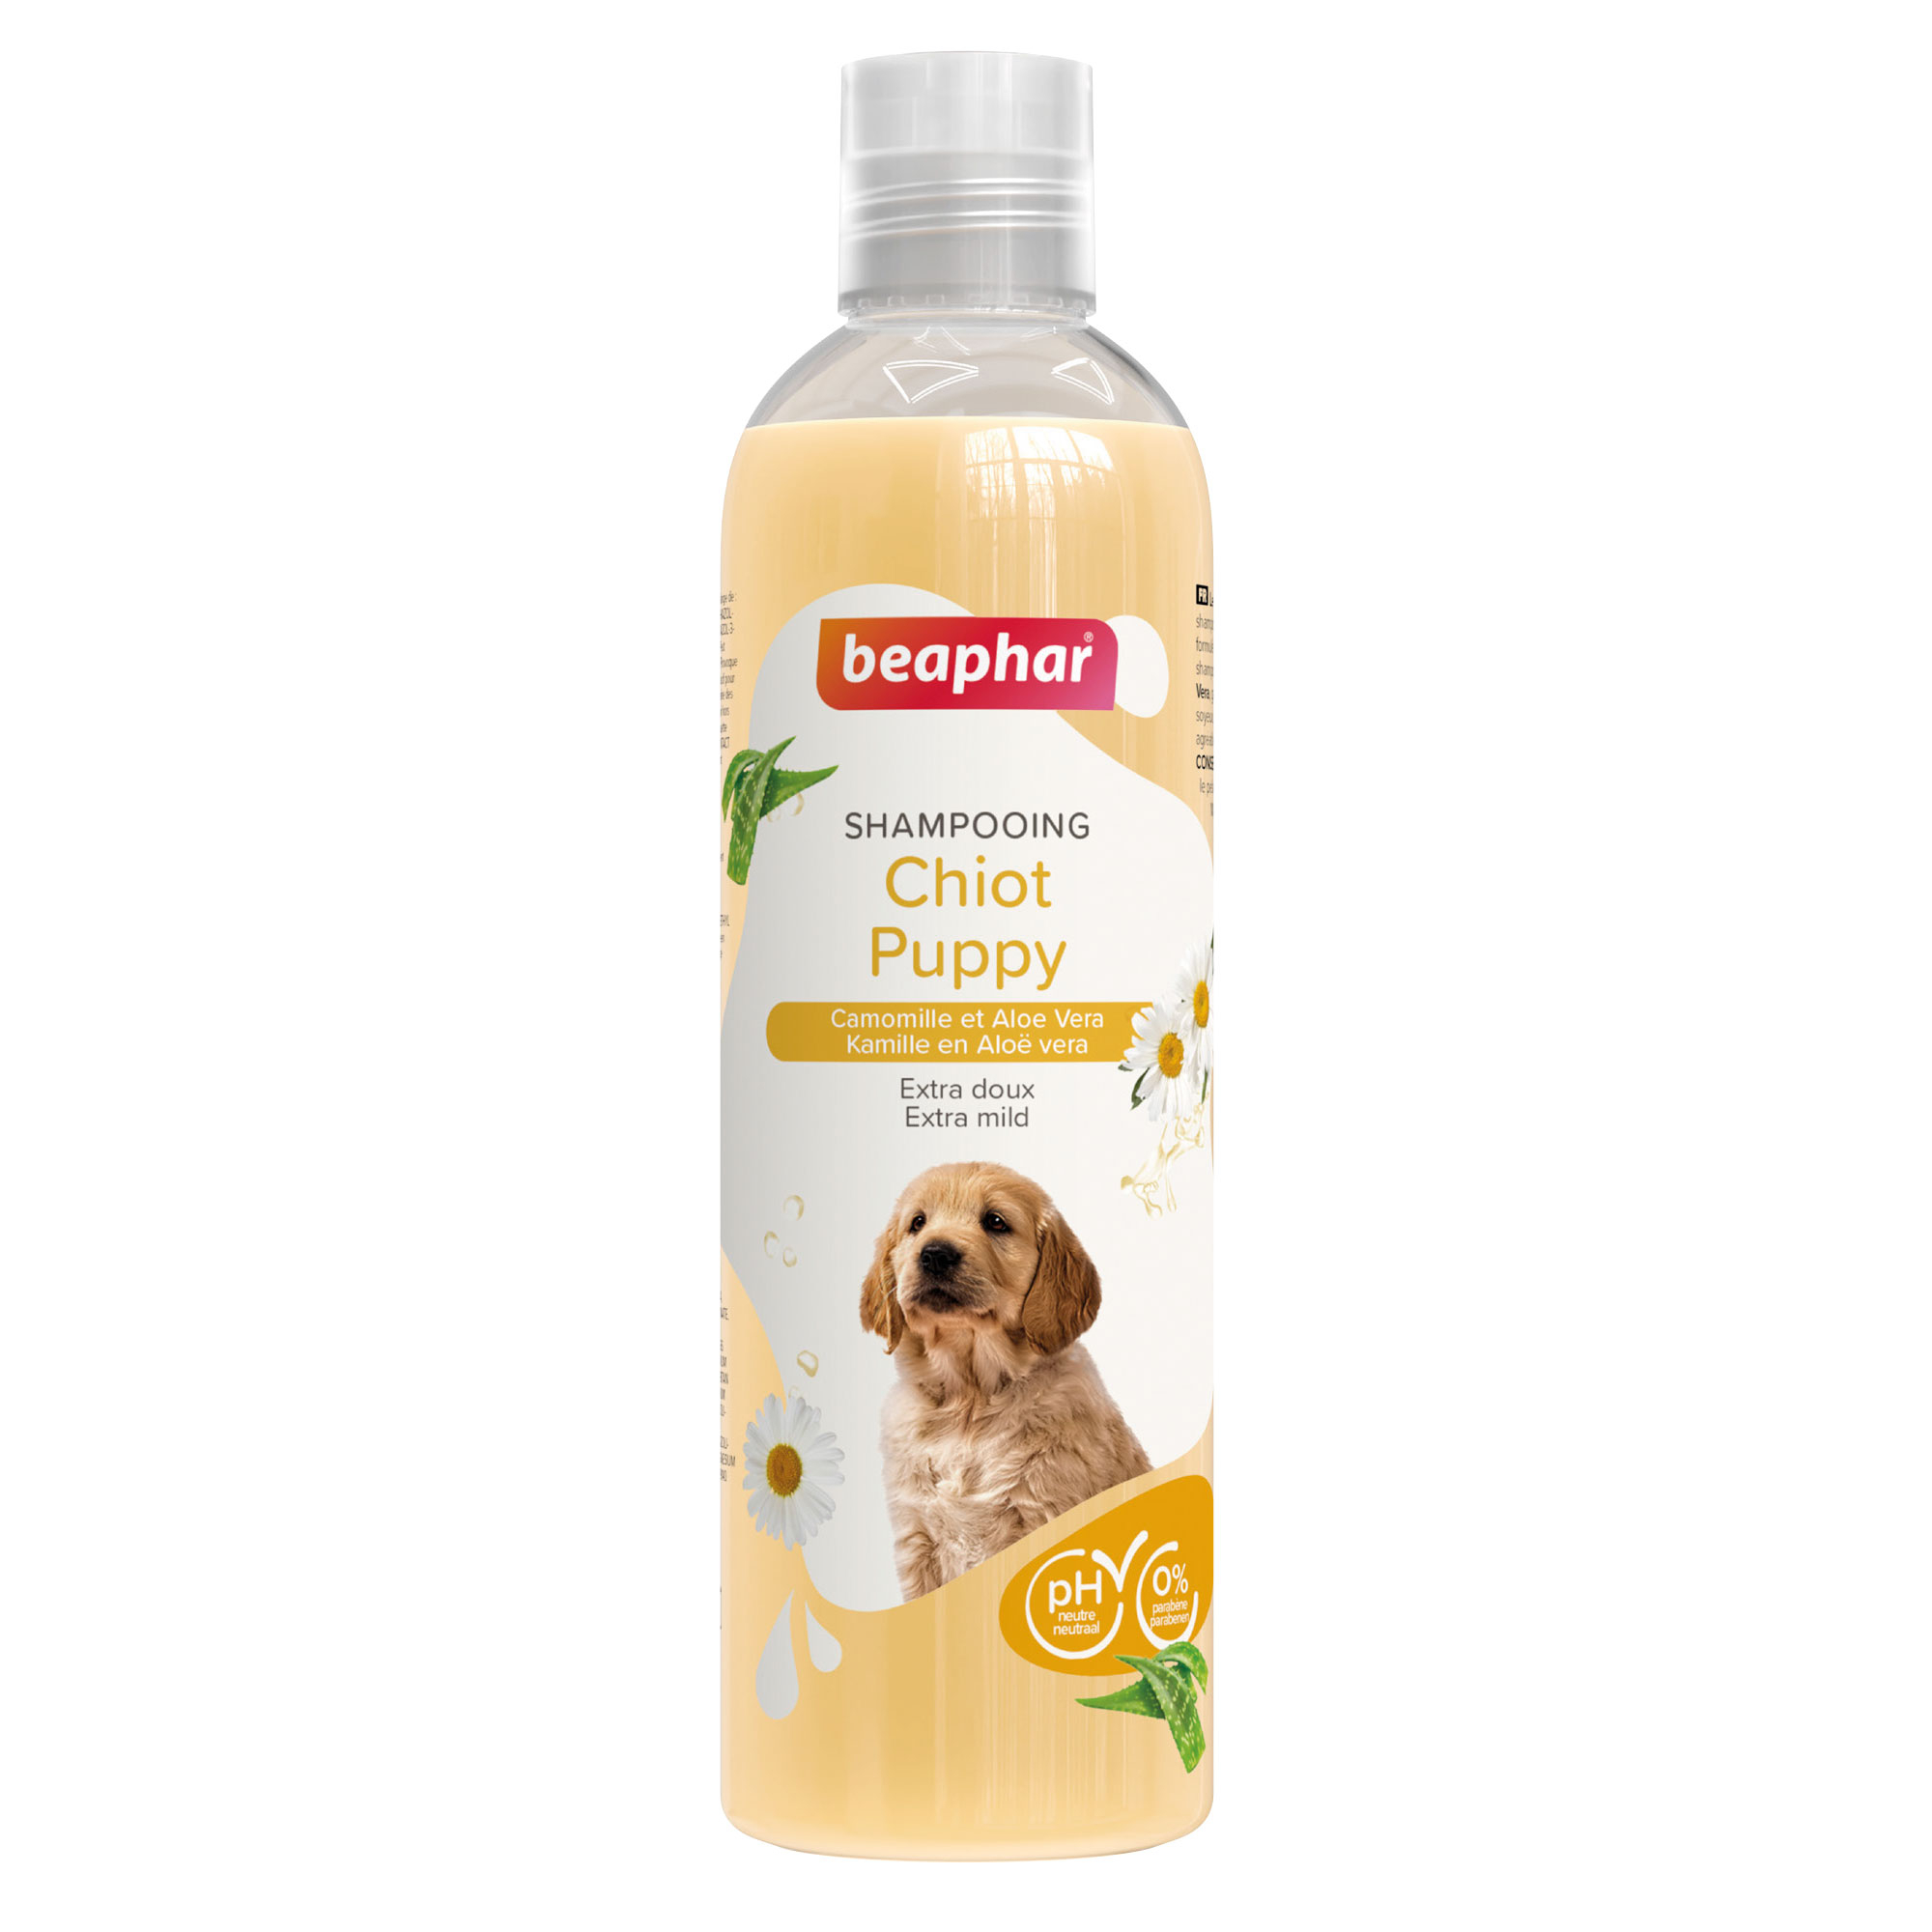 Shampoo essenziale per cuccioli con Aloe Vera e Camomilla